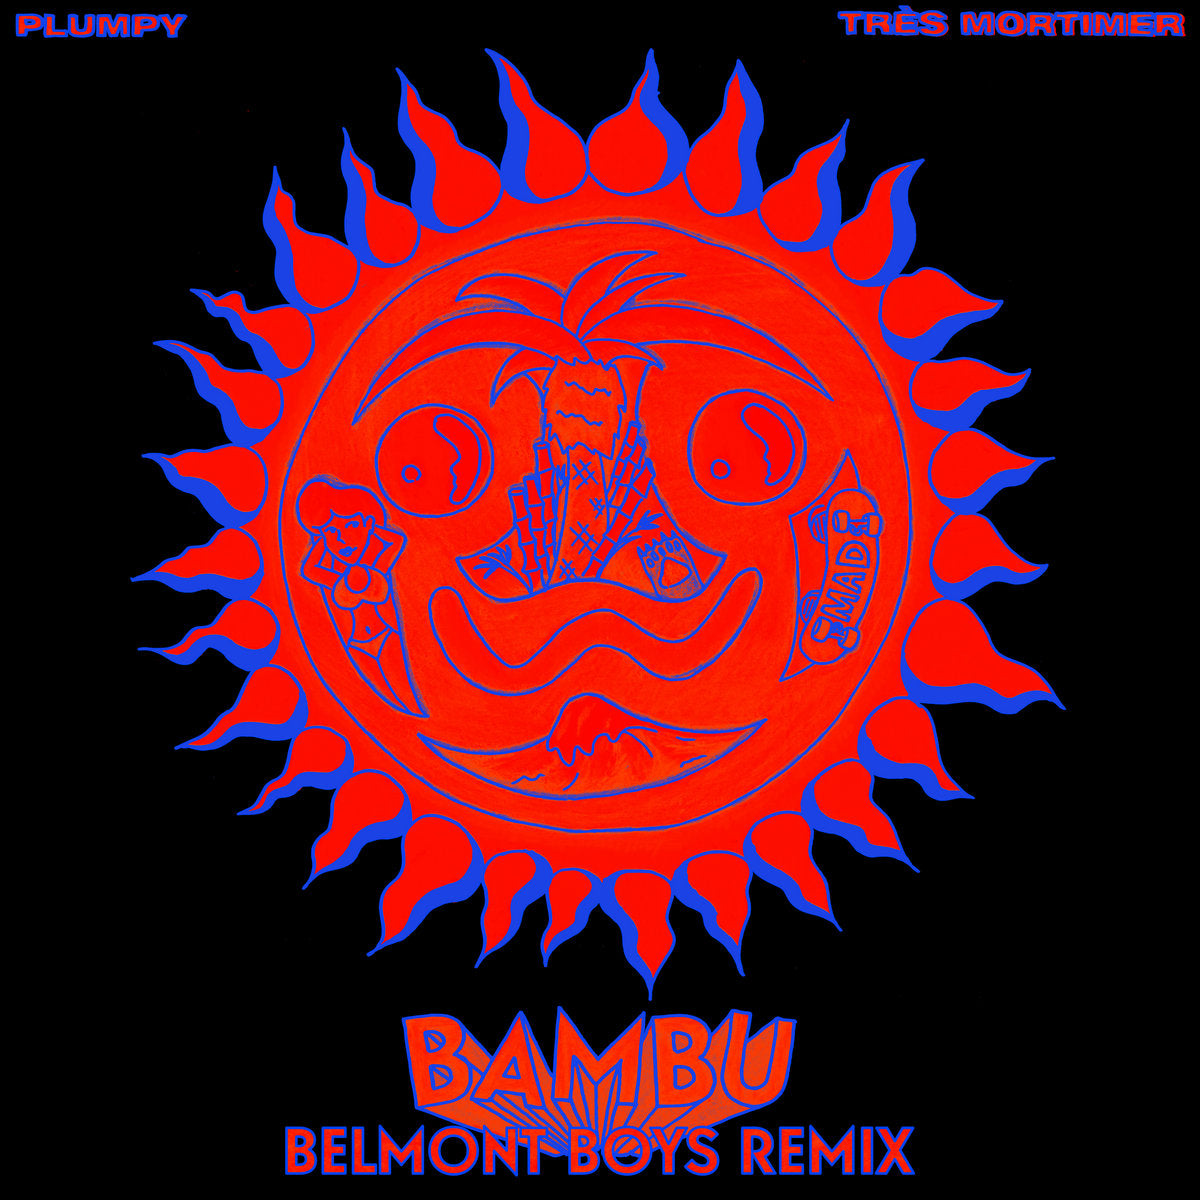 BAMBU (Belmont Boys Remix)